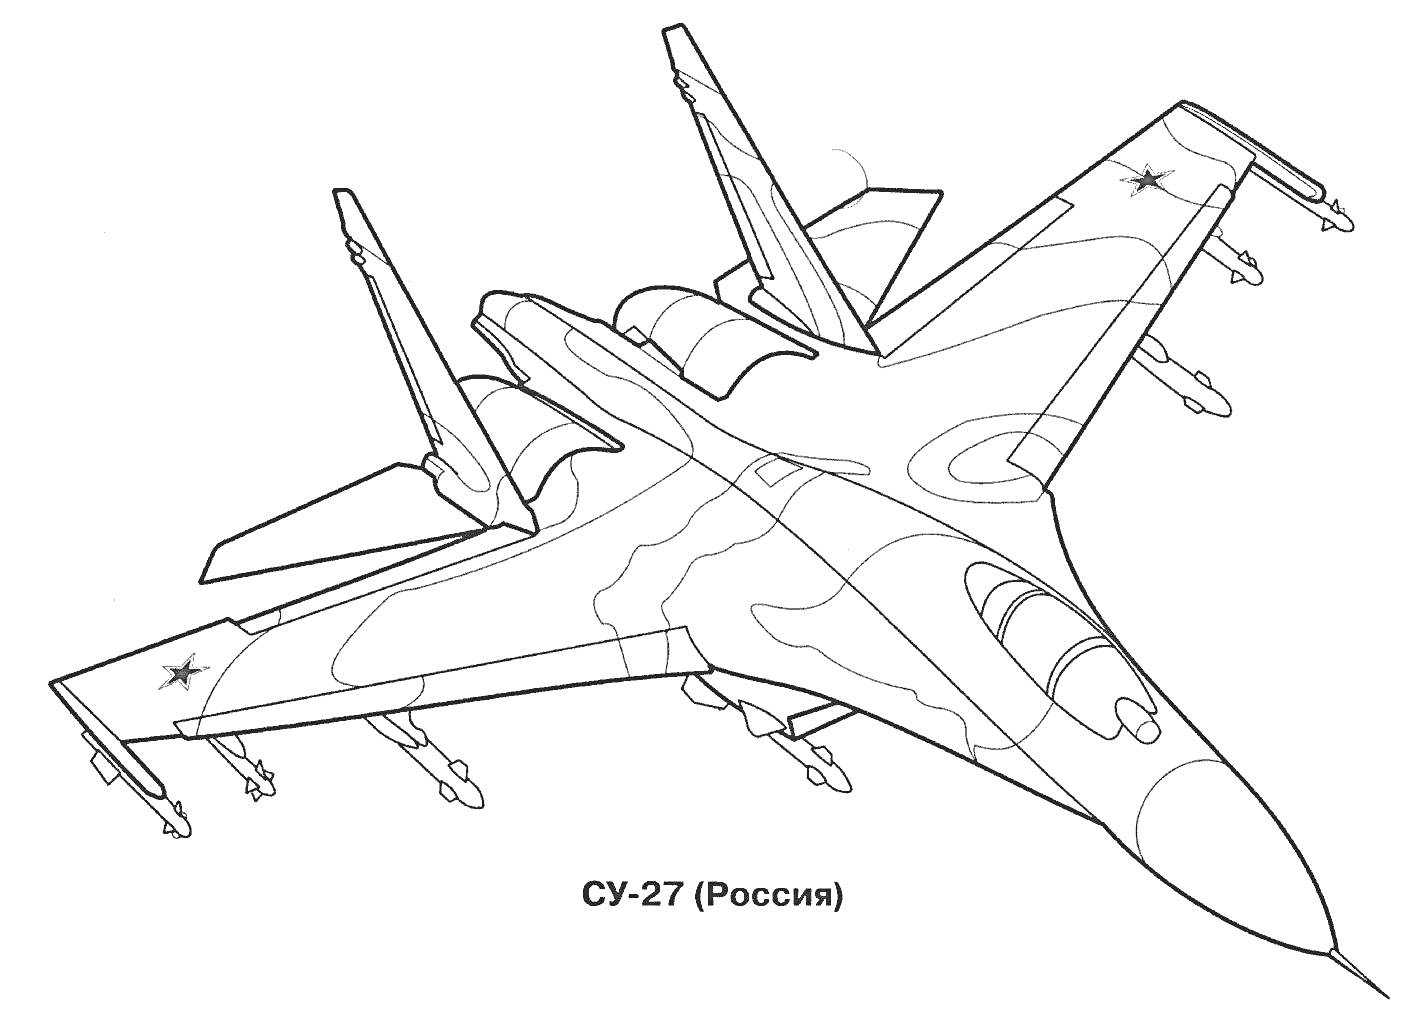 Раскраска военного самолета СУ-27 с видимыми элементами, включая крылья, хвост, кабину, шасси, ракеты, с надписью 